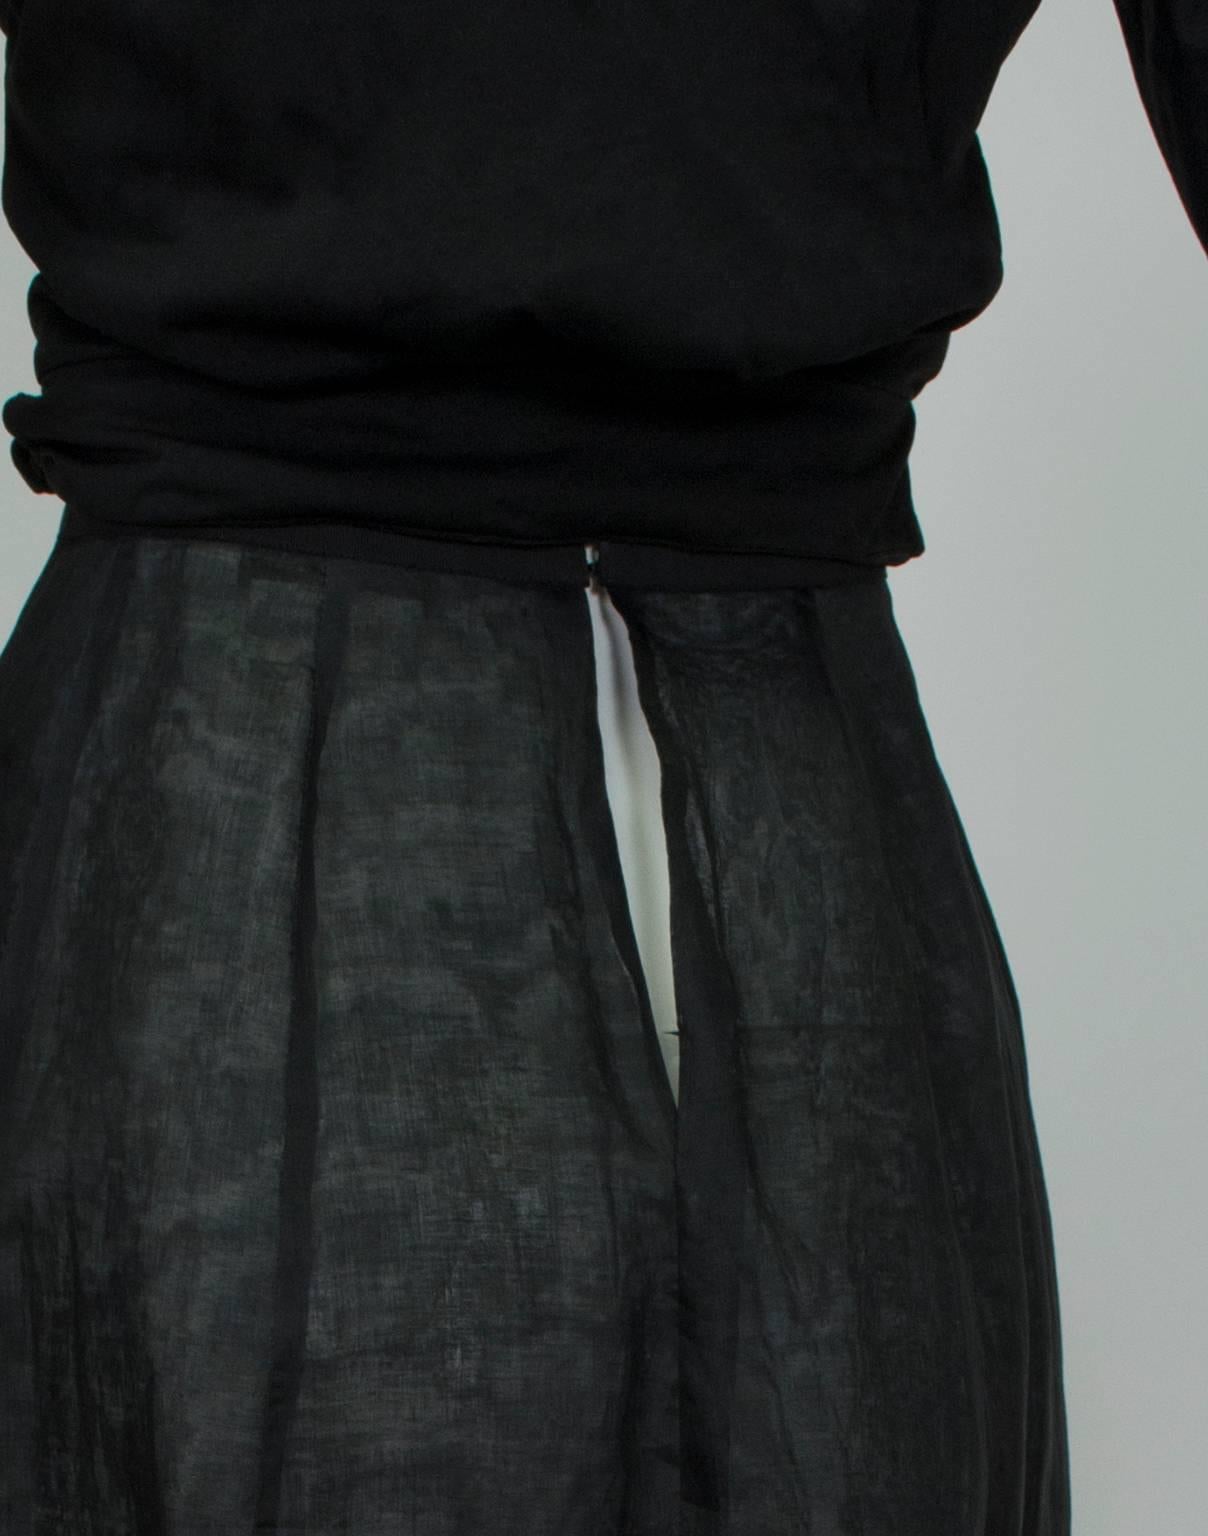 Women's New Jacques Fath Paris Sheer Black Demi-Couture Linen Lingerie Skirt - M, 1990s For Sale